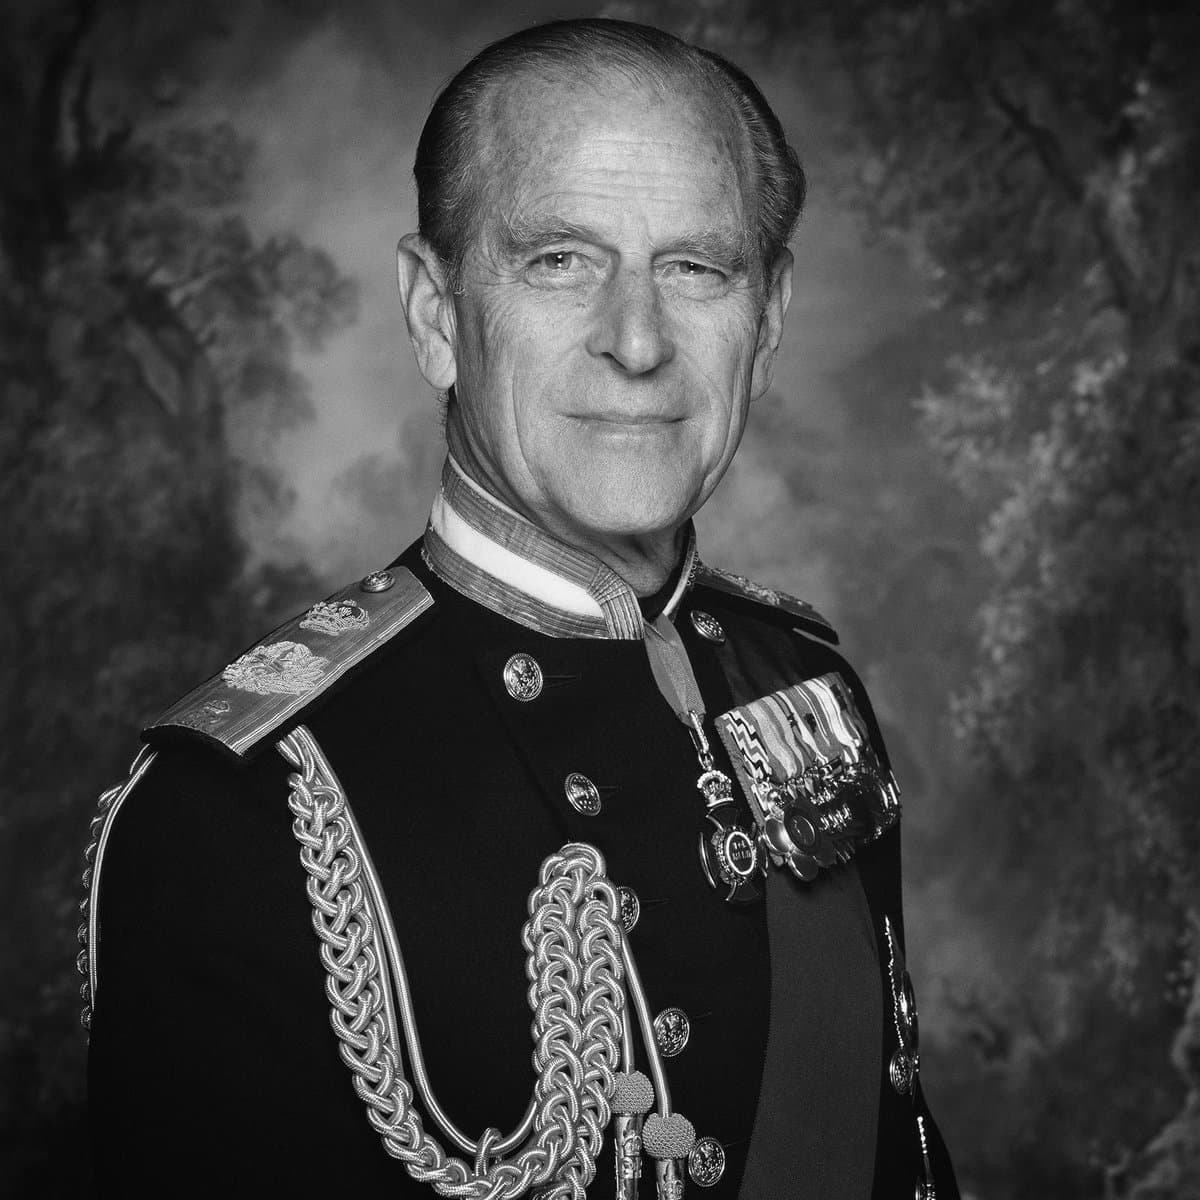 Умер принц Филип, муж королевы Елизаветы II. Ему было 99 лет - фото 1